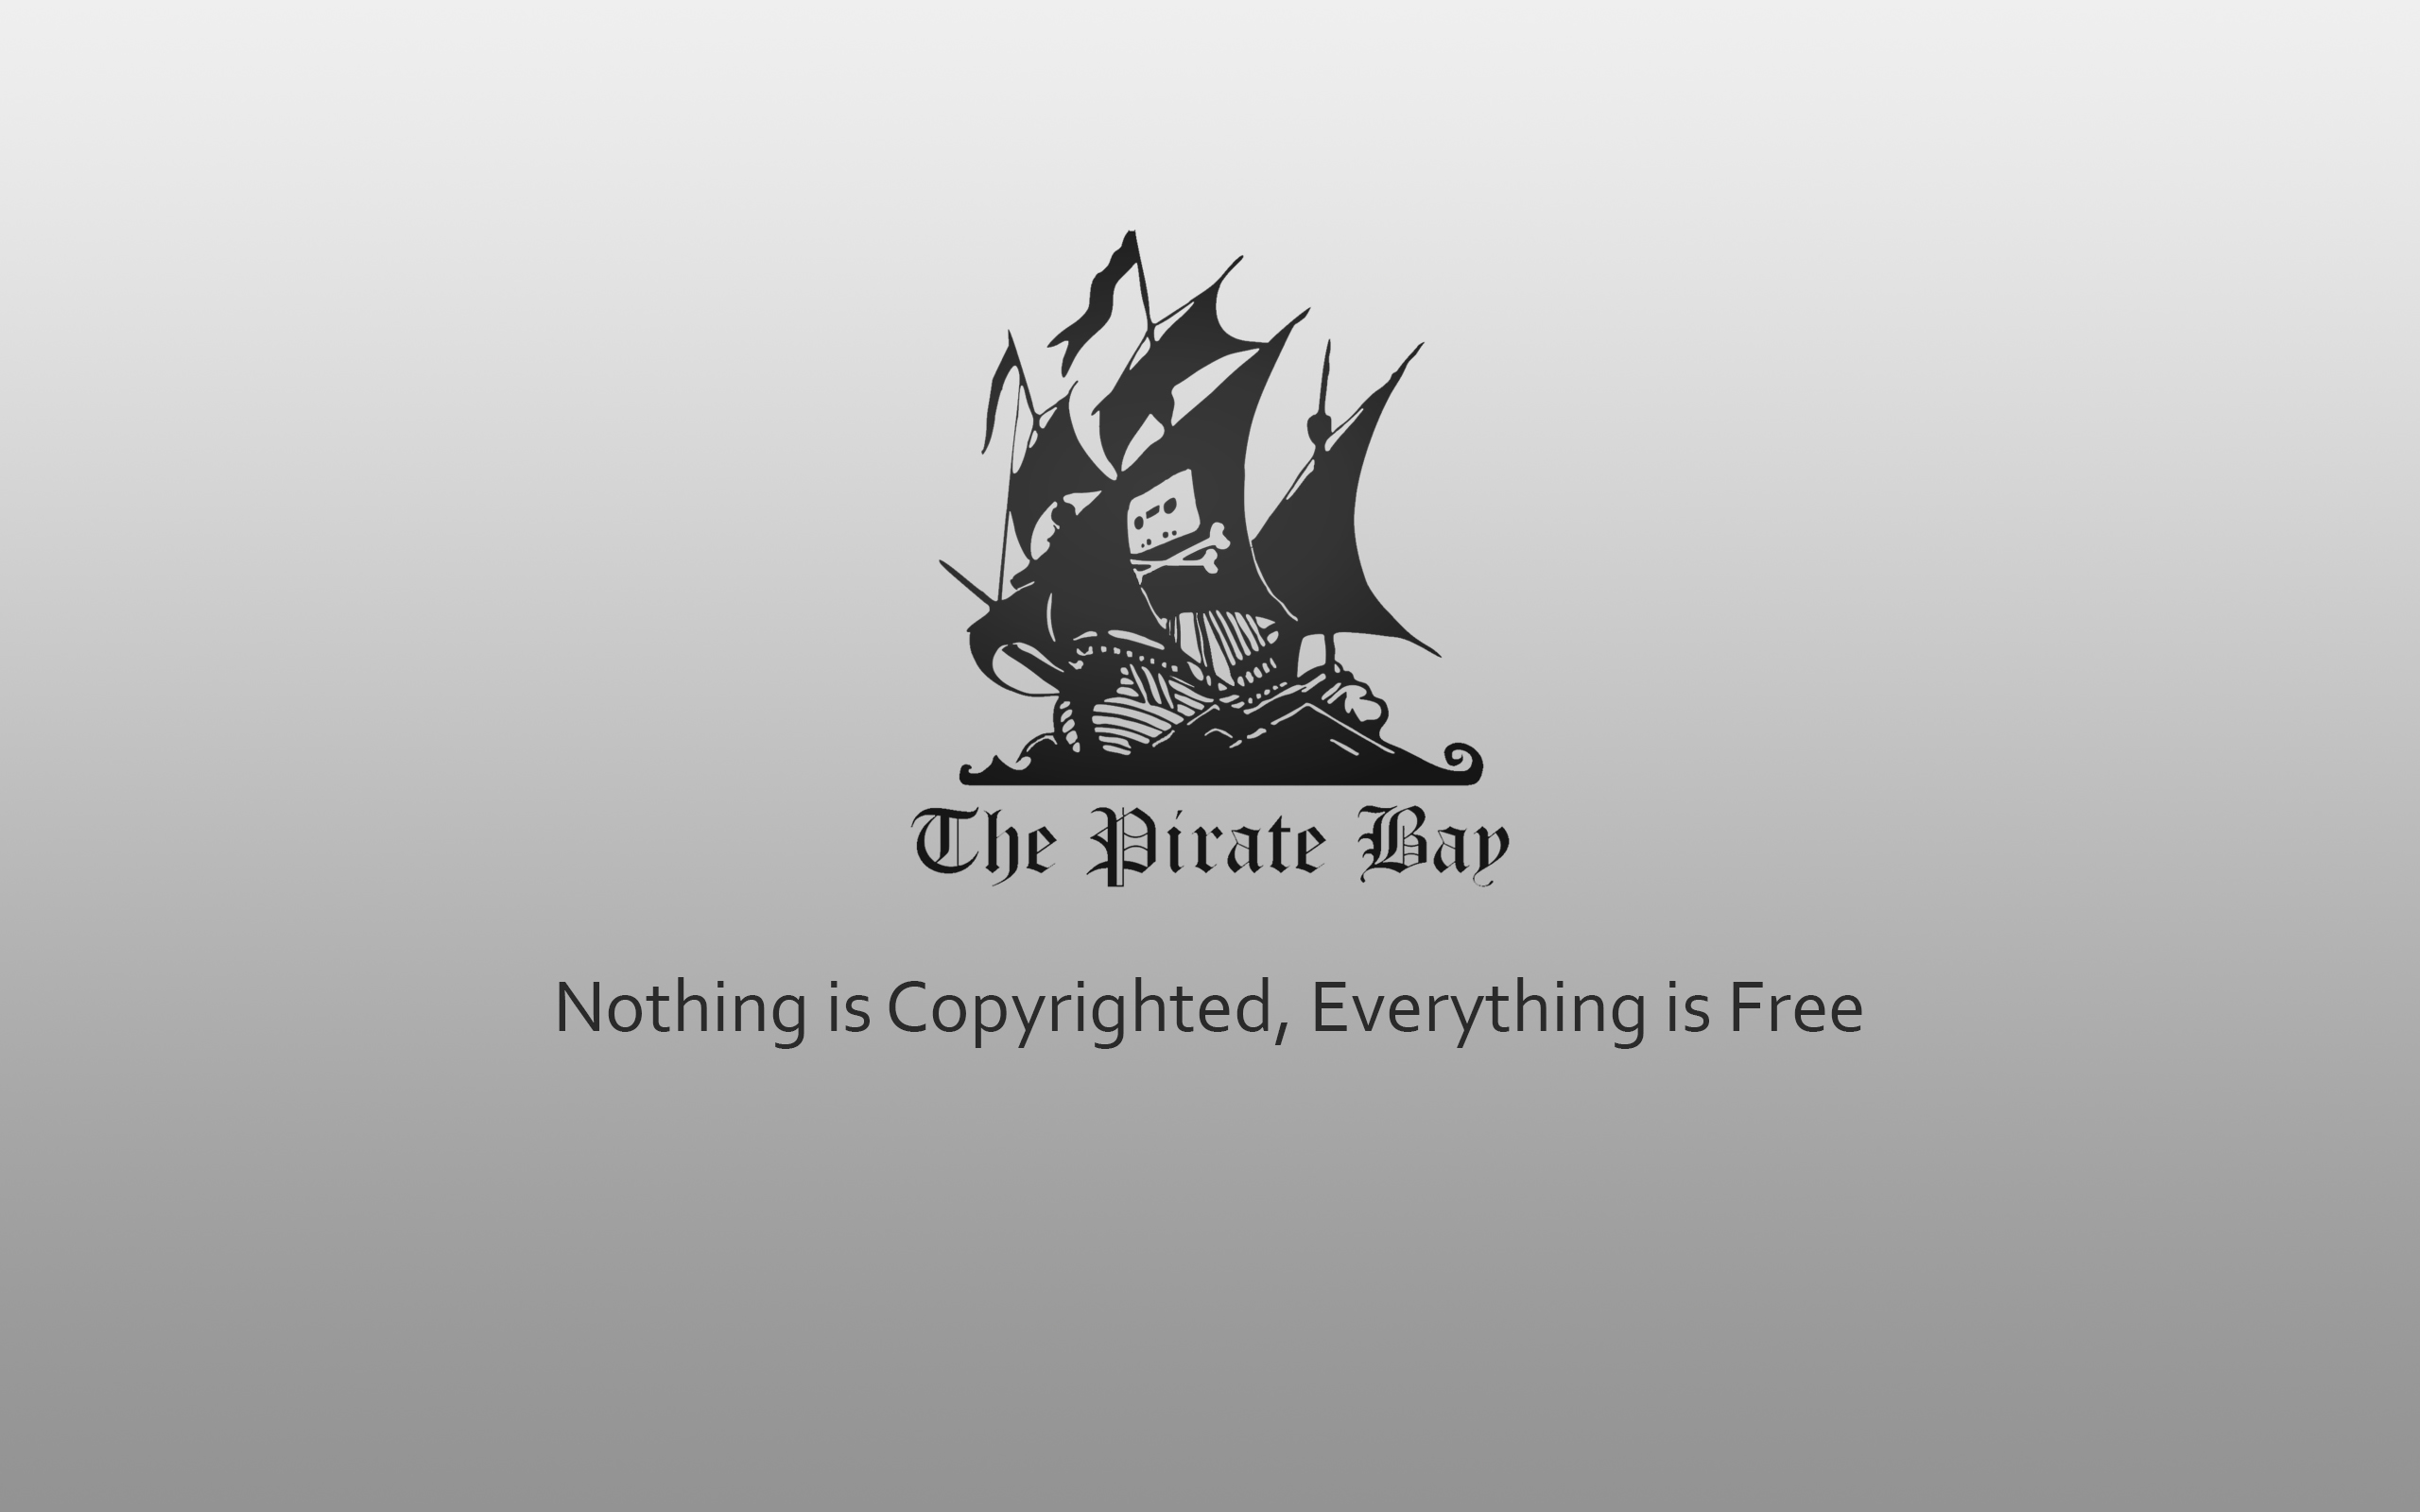 Популярные заставки и фоны Пиратская Бухта на компьютер